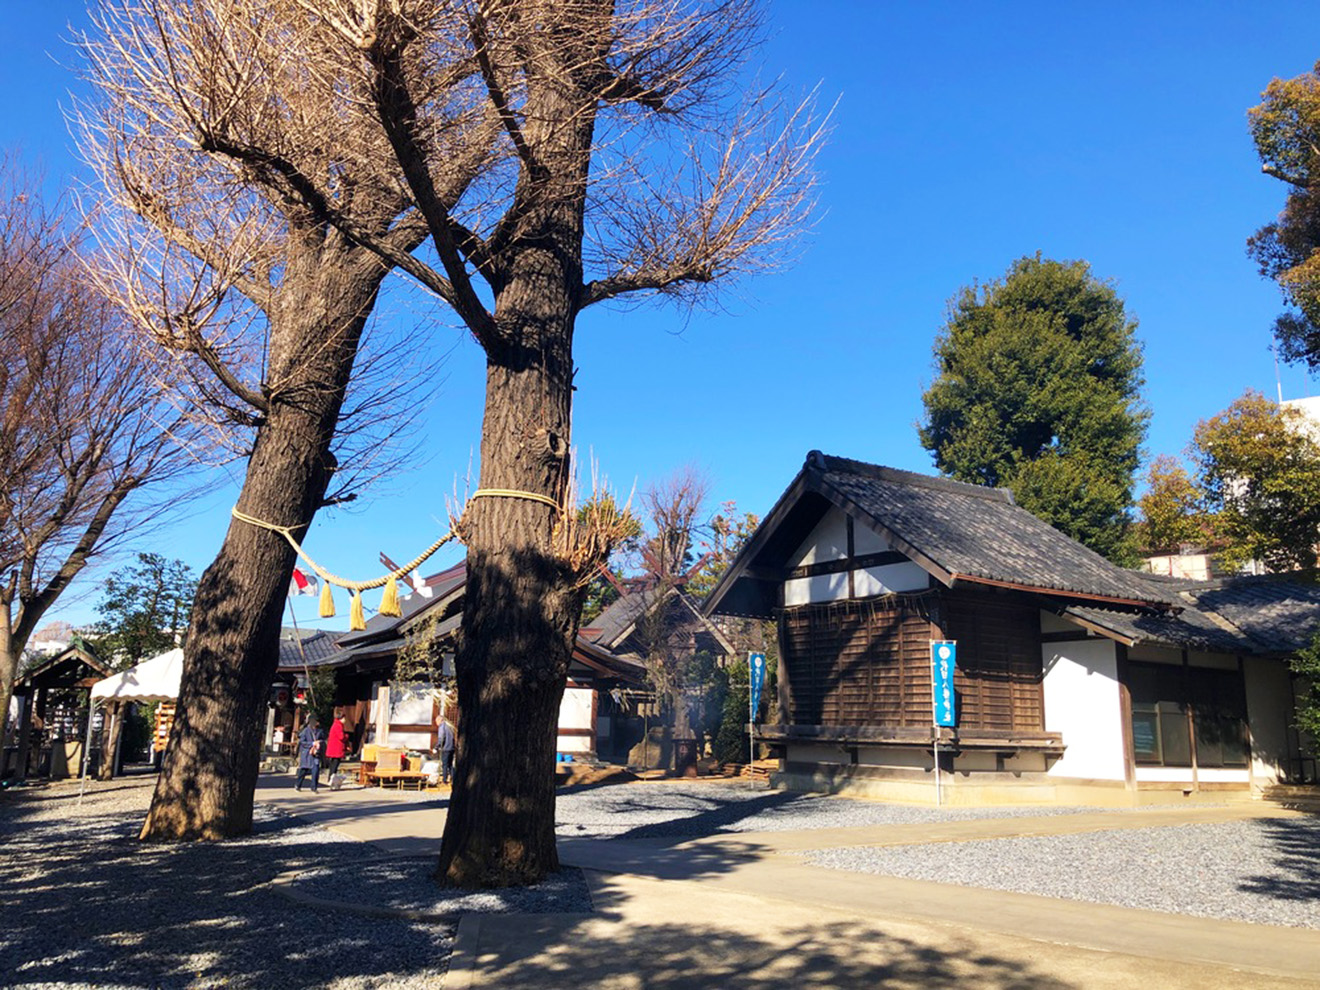 「代田八幡神社」の境内